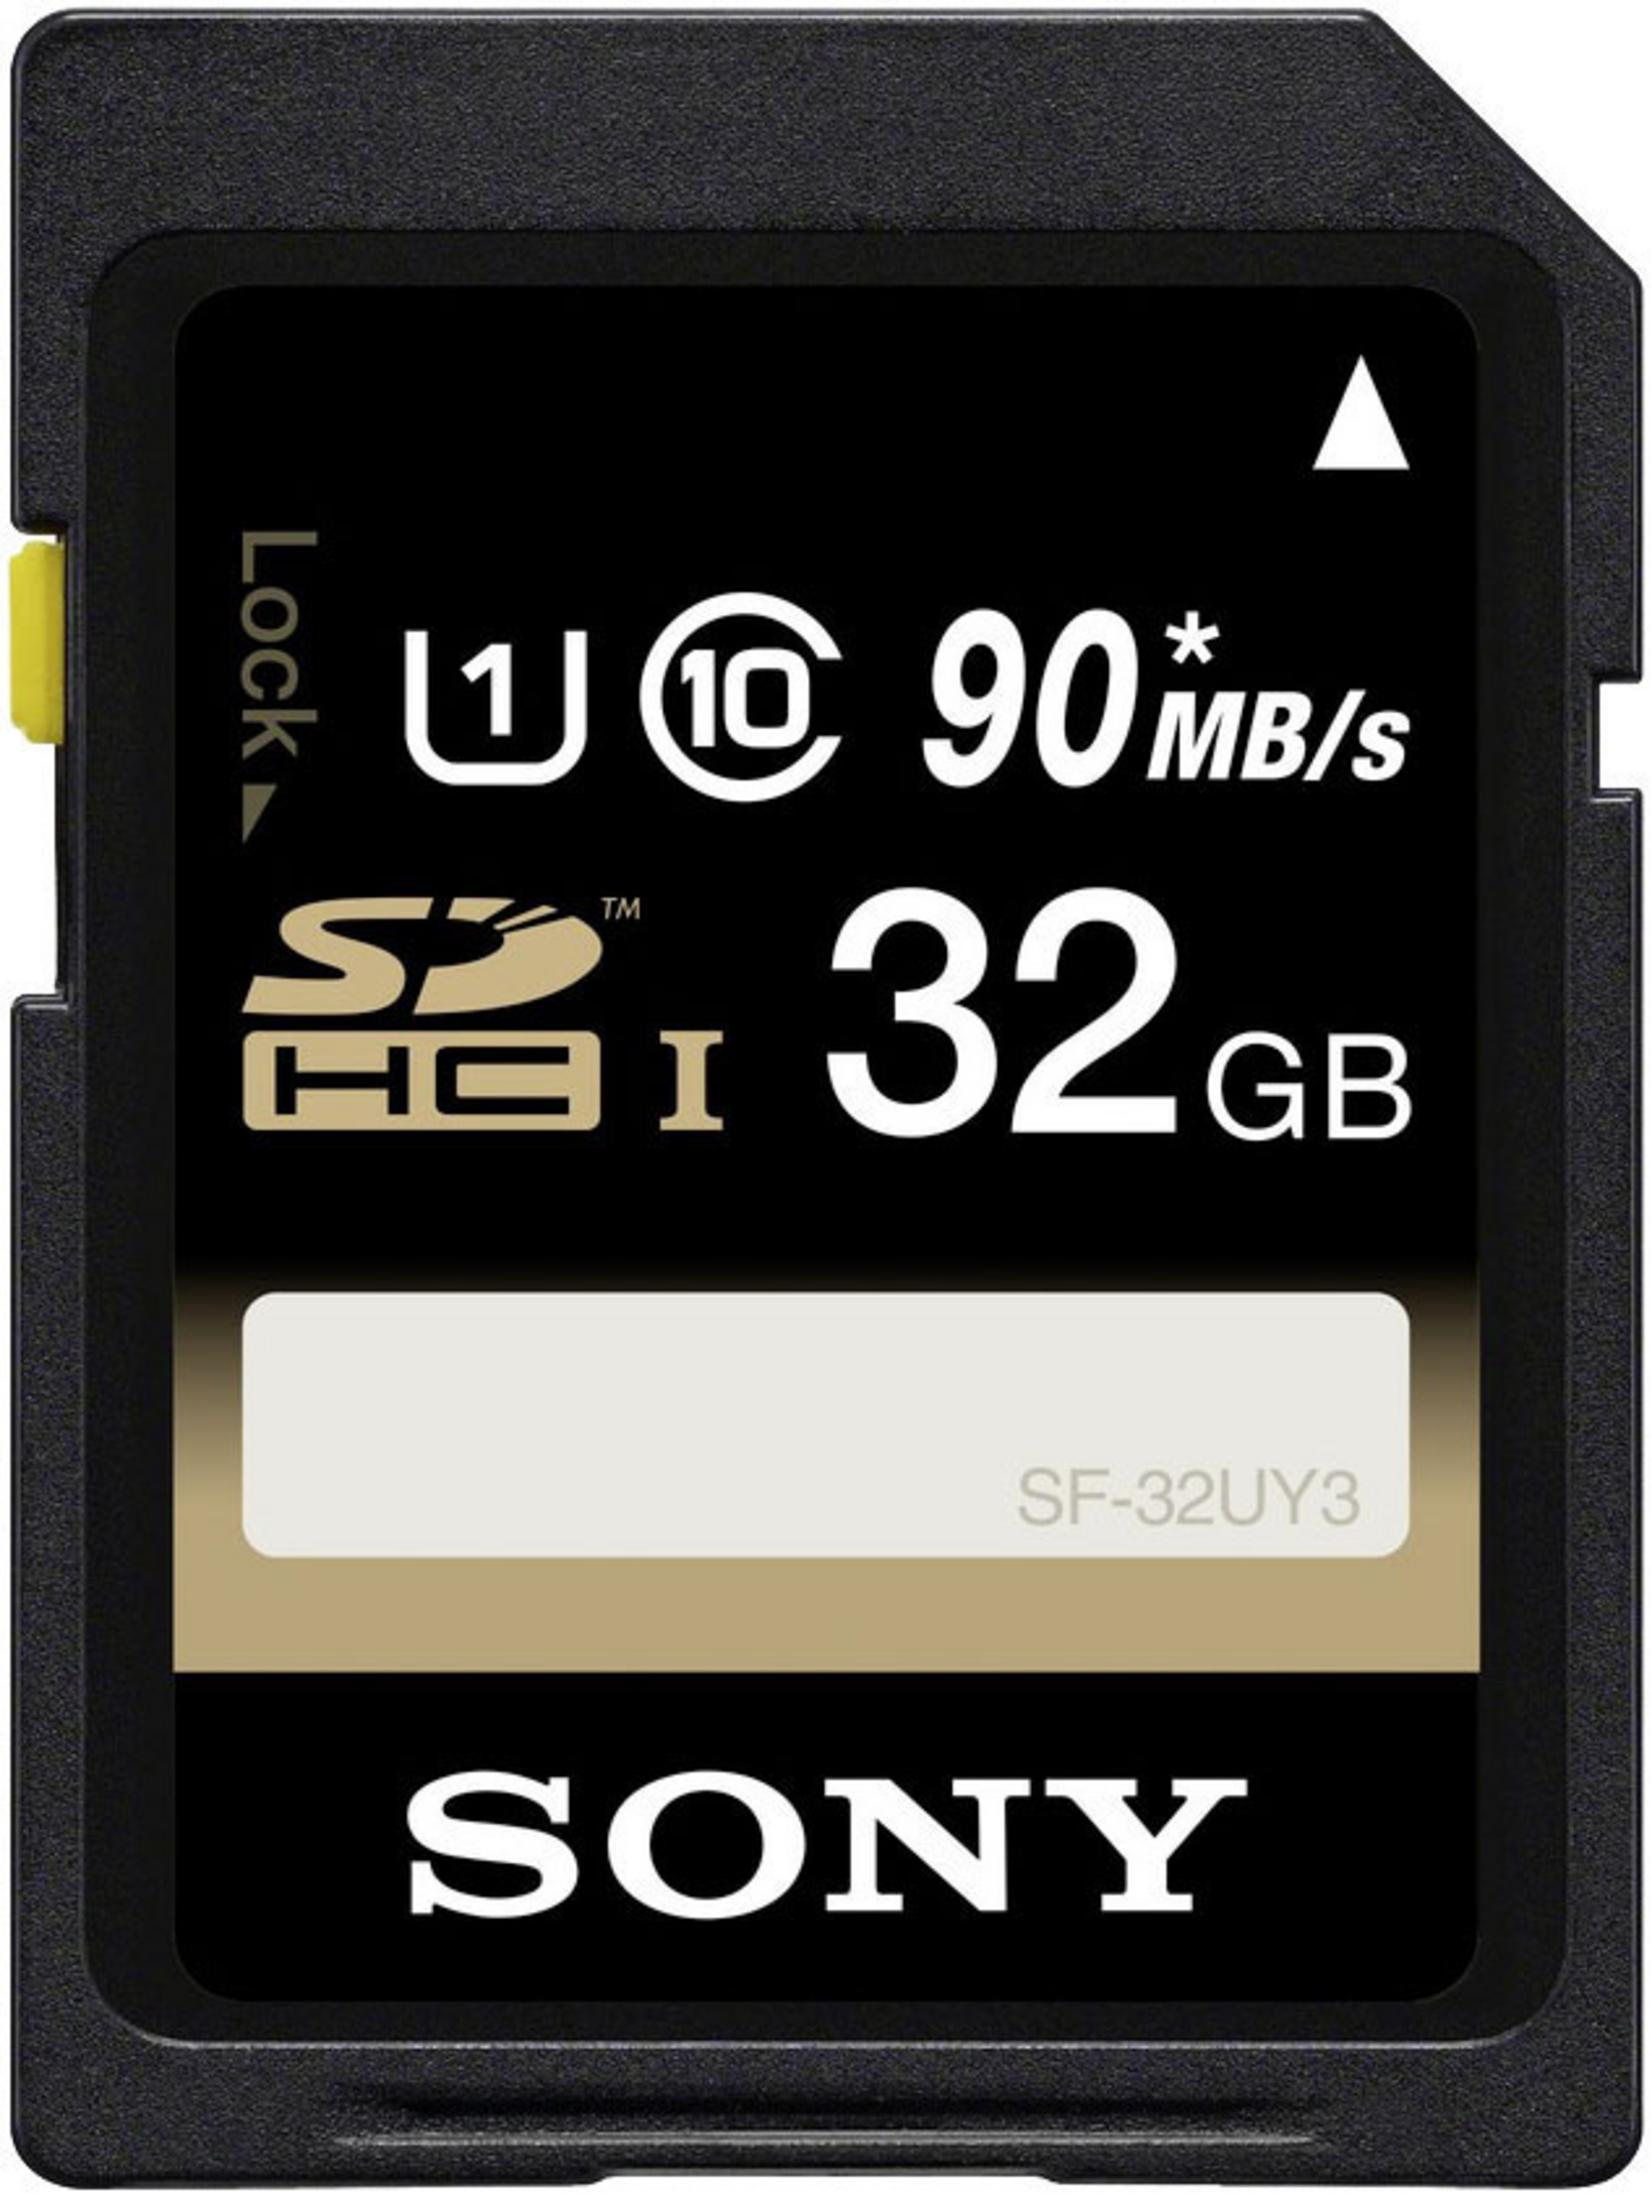 32 GB, 32U, SF Speicherkarte, 90 SDHC MB/s SONY